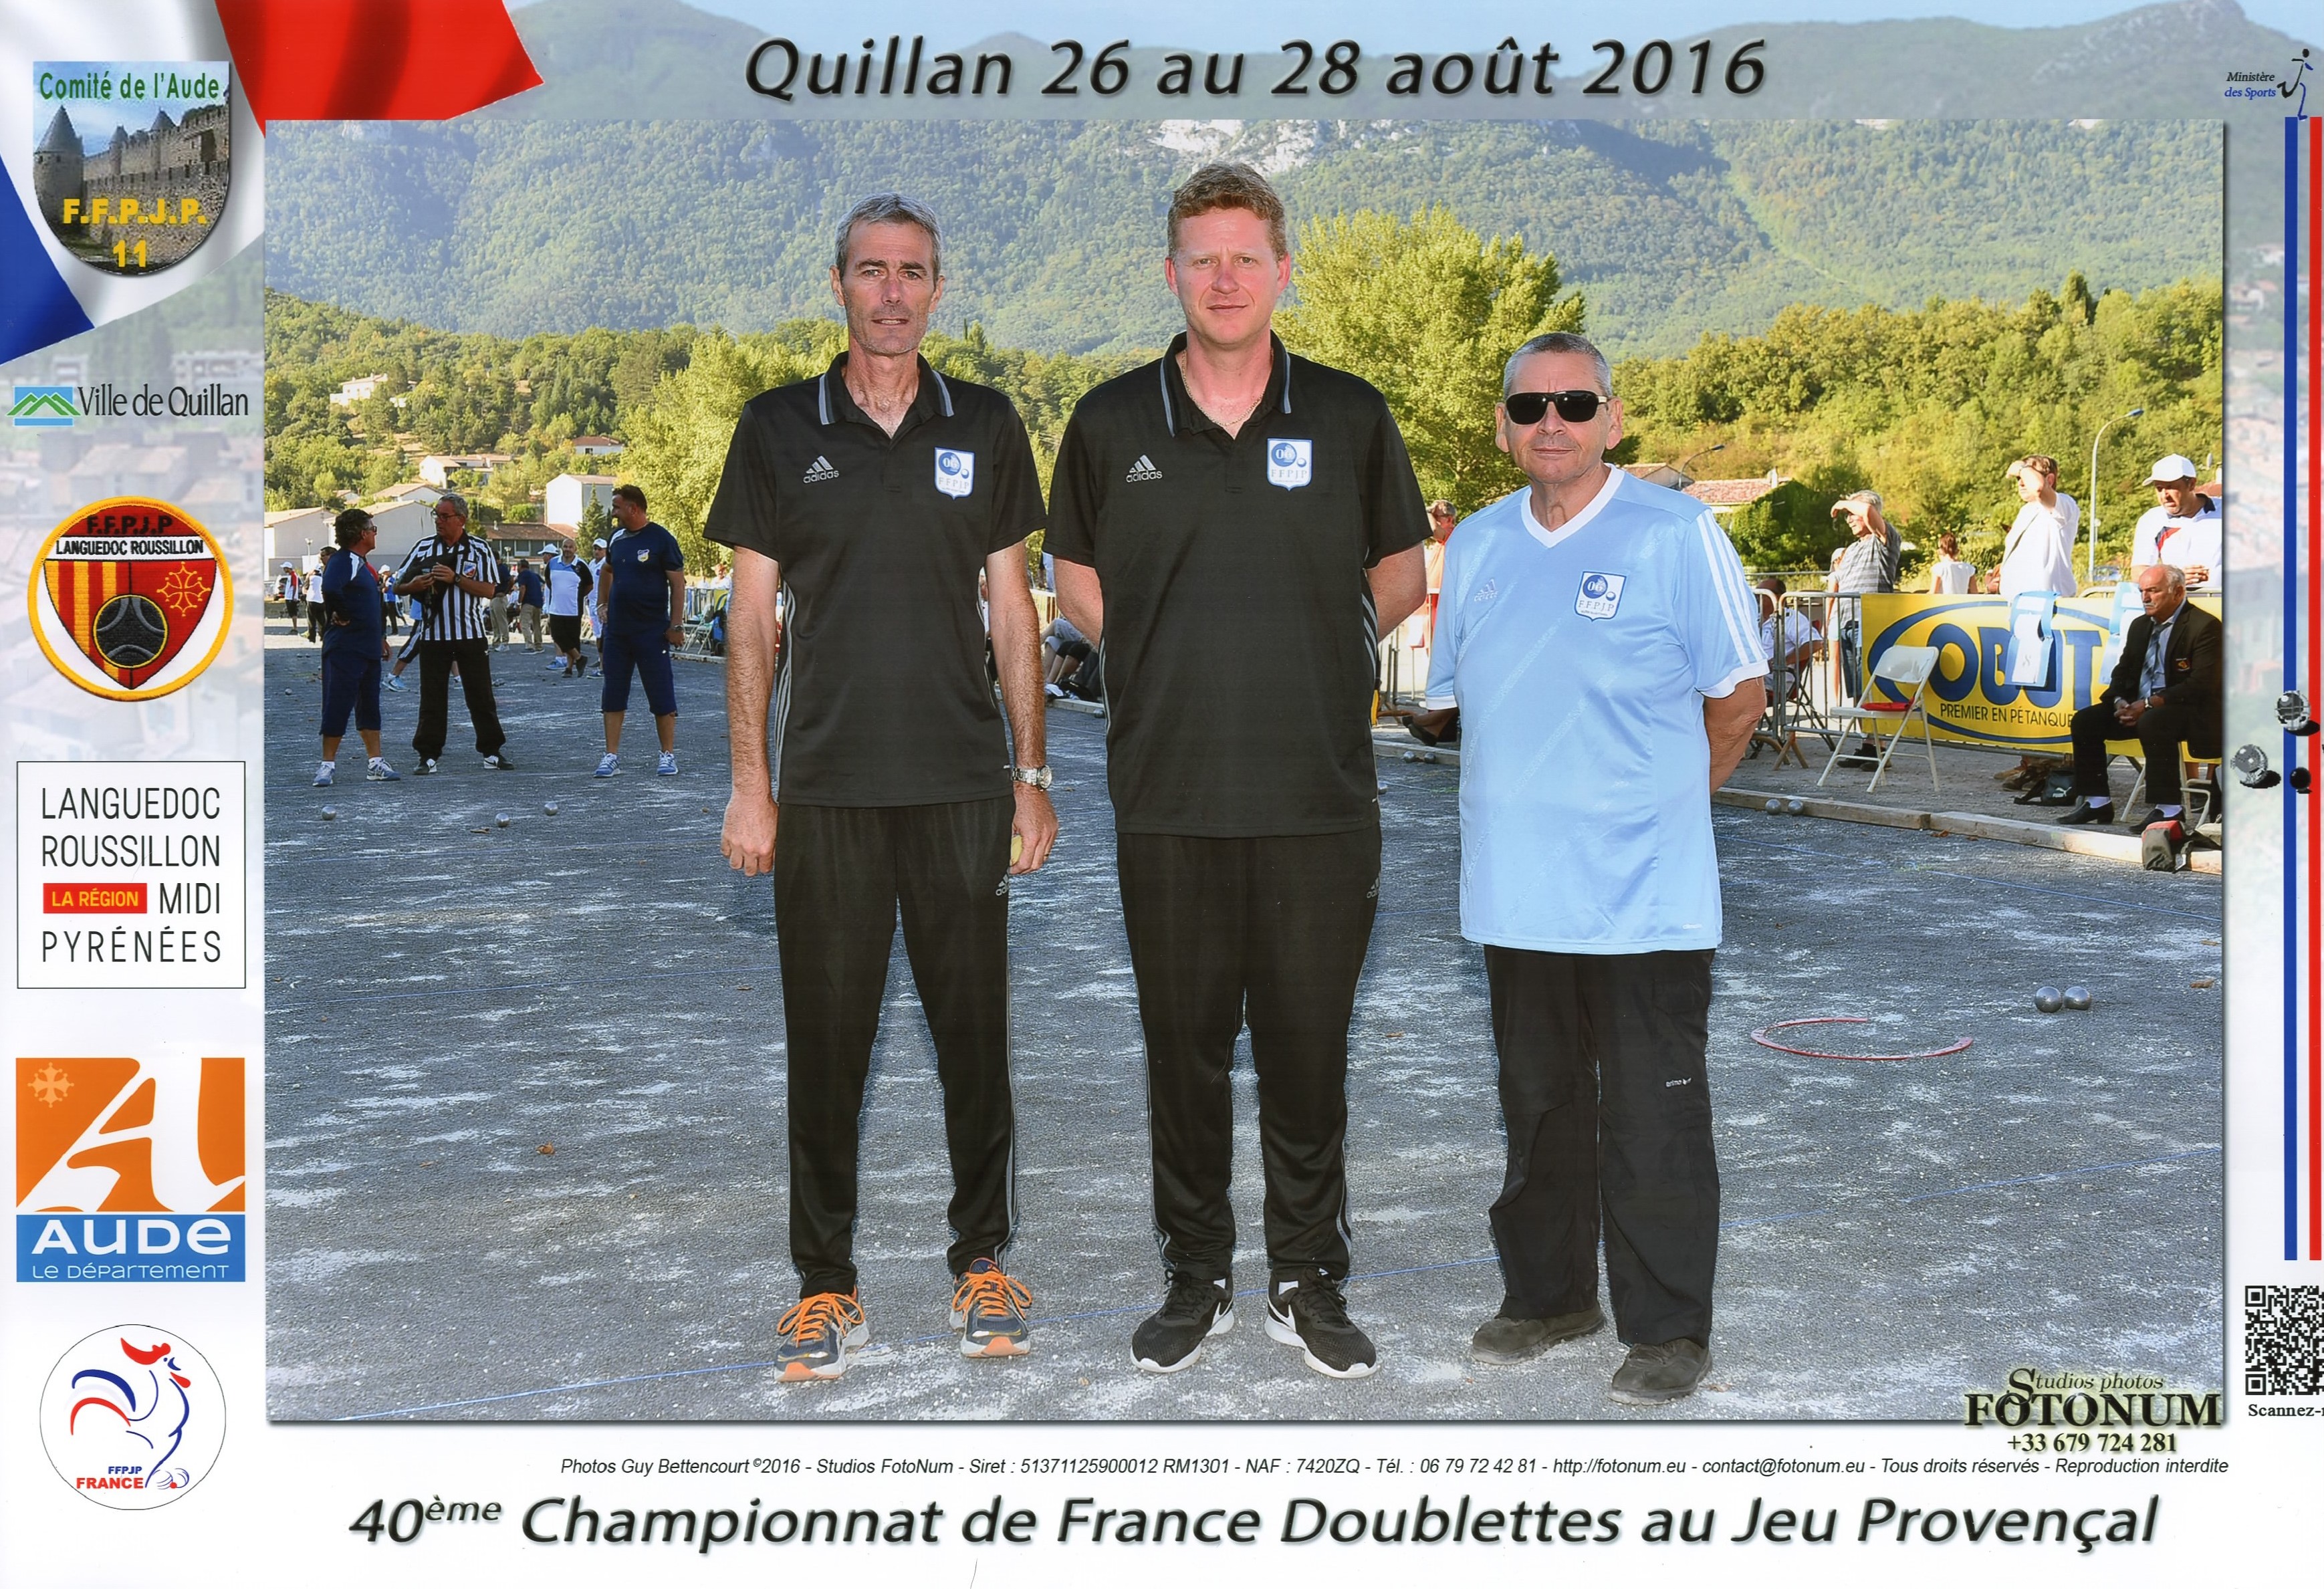 1er France doublettes au Jeu Provençal perdu en 1/32ème contre CHACON-MICHELET du 66